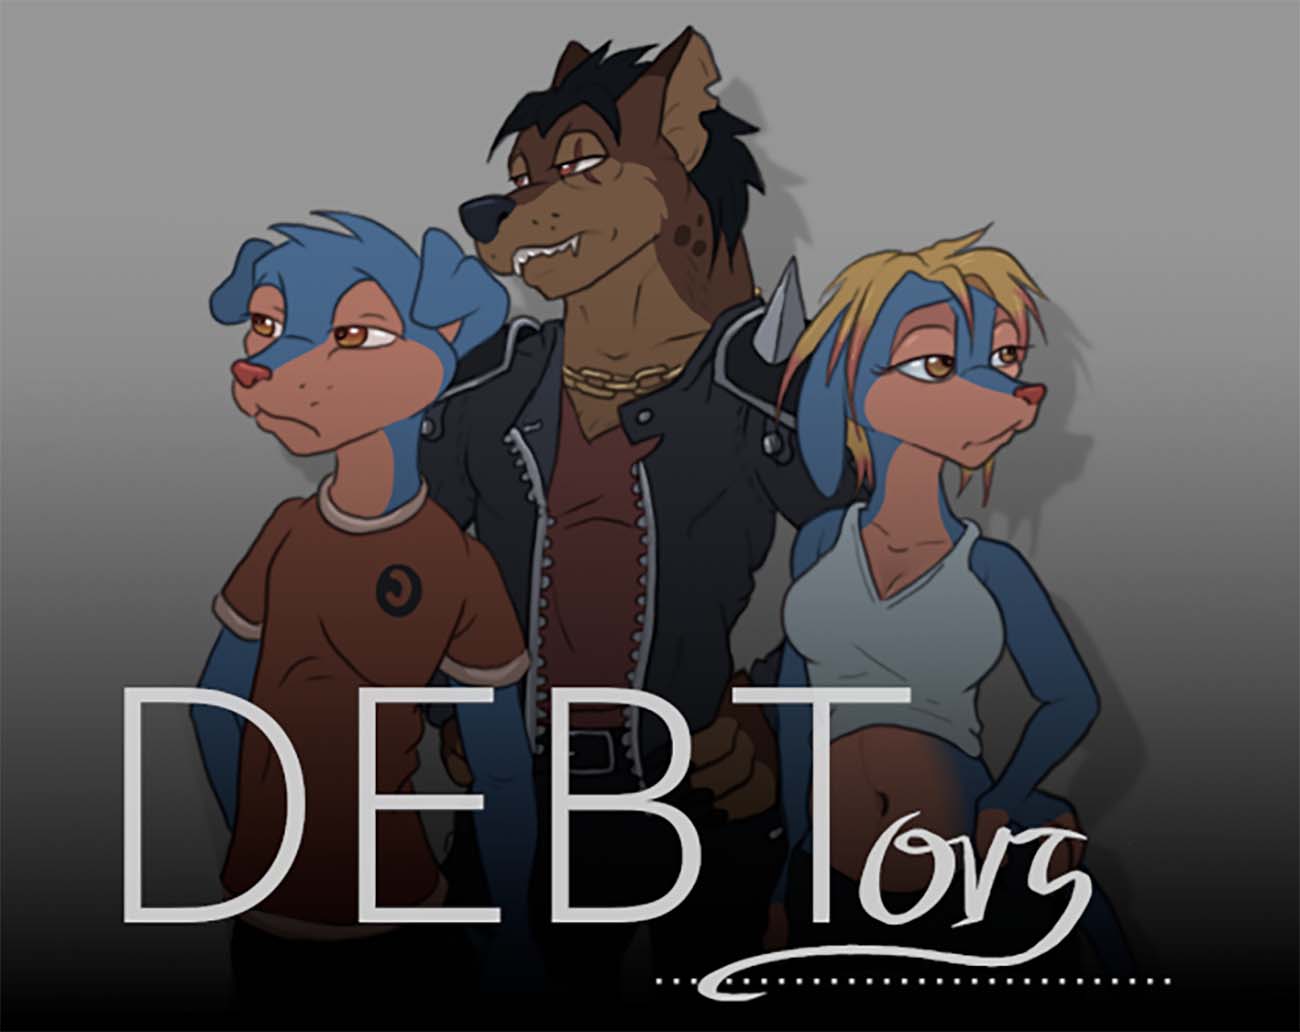 Debitori